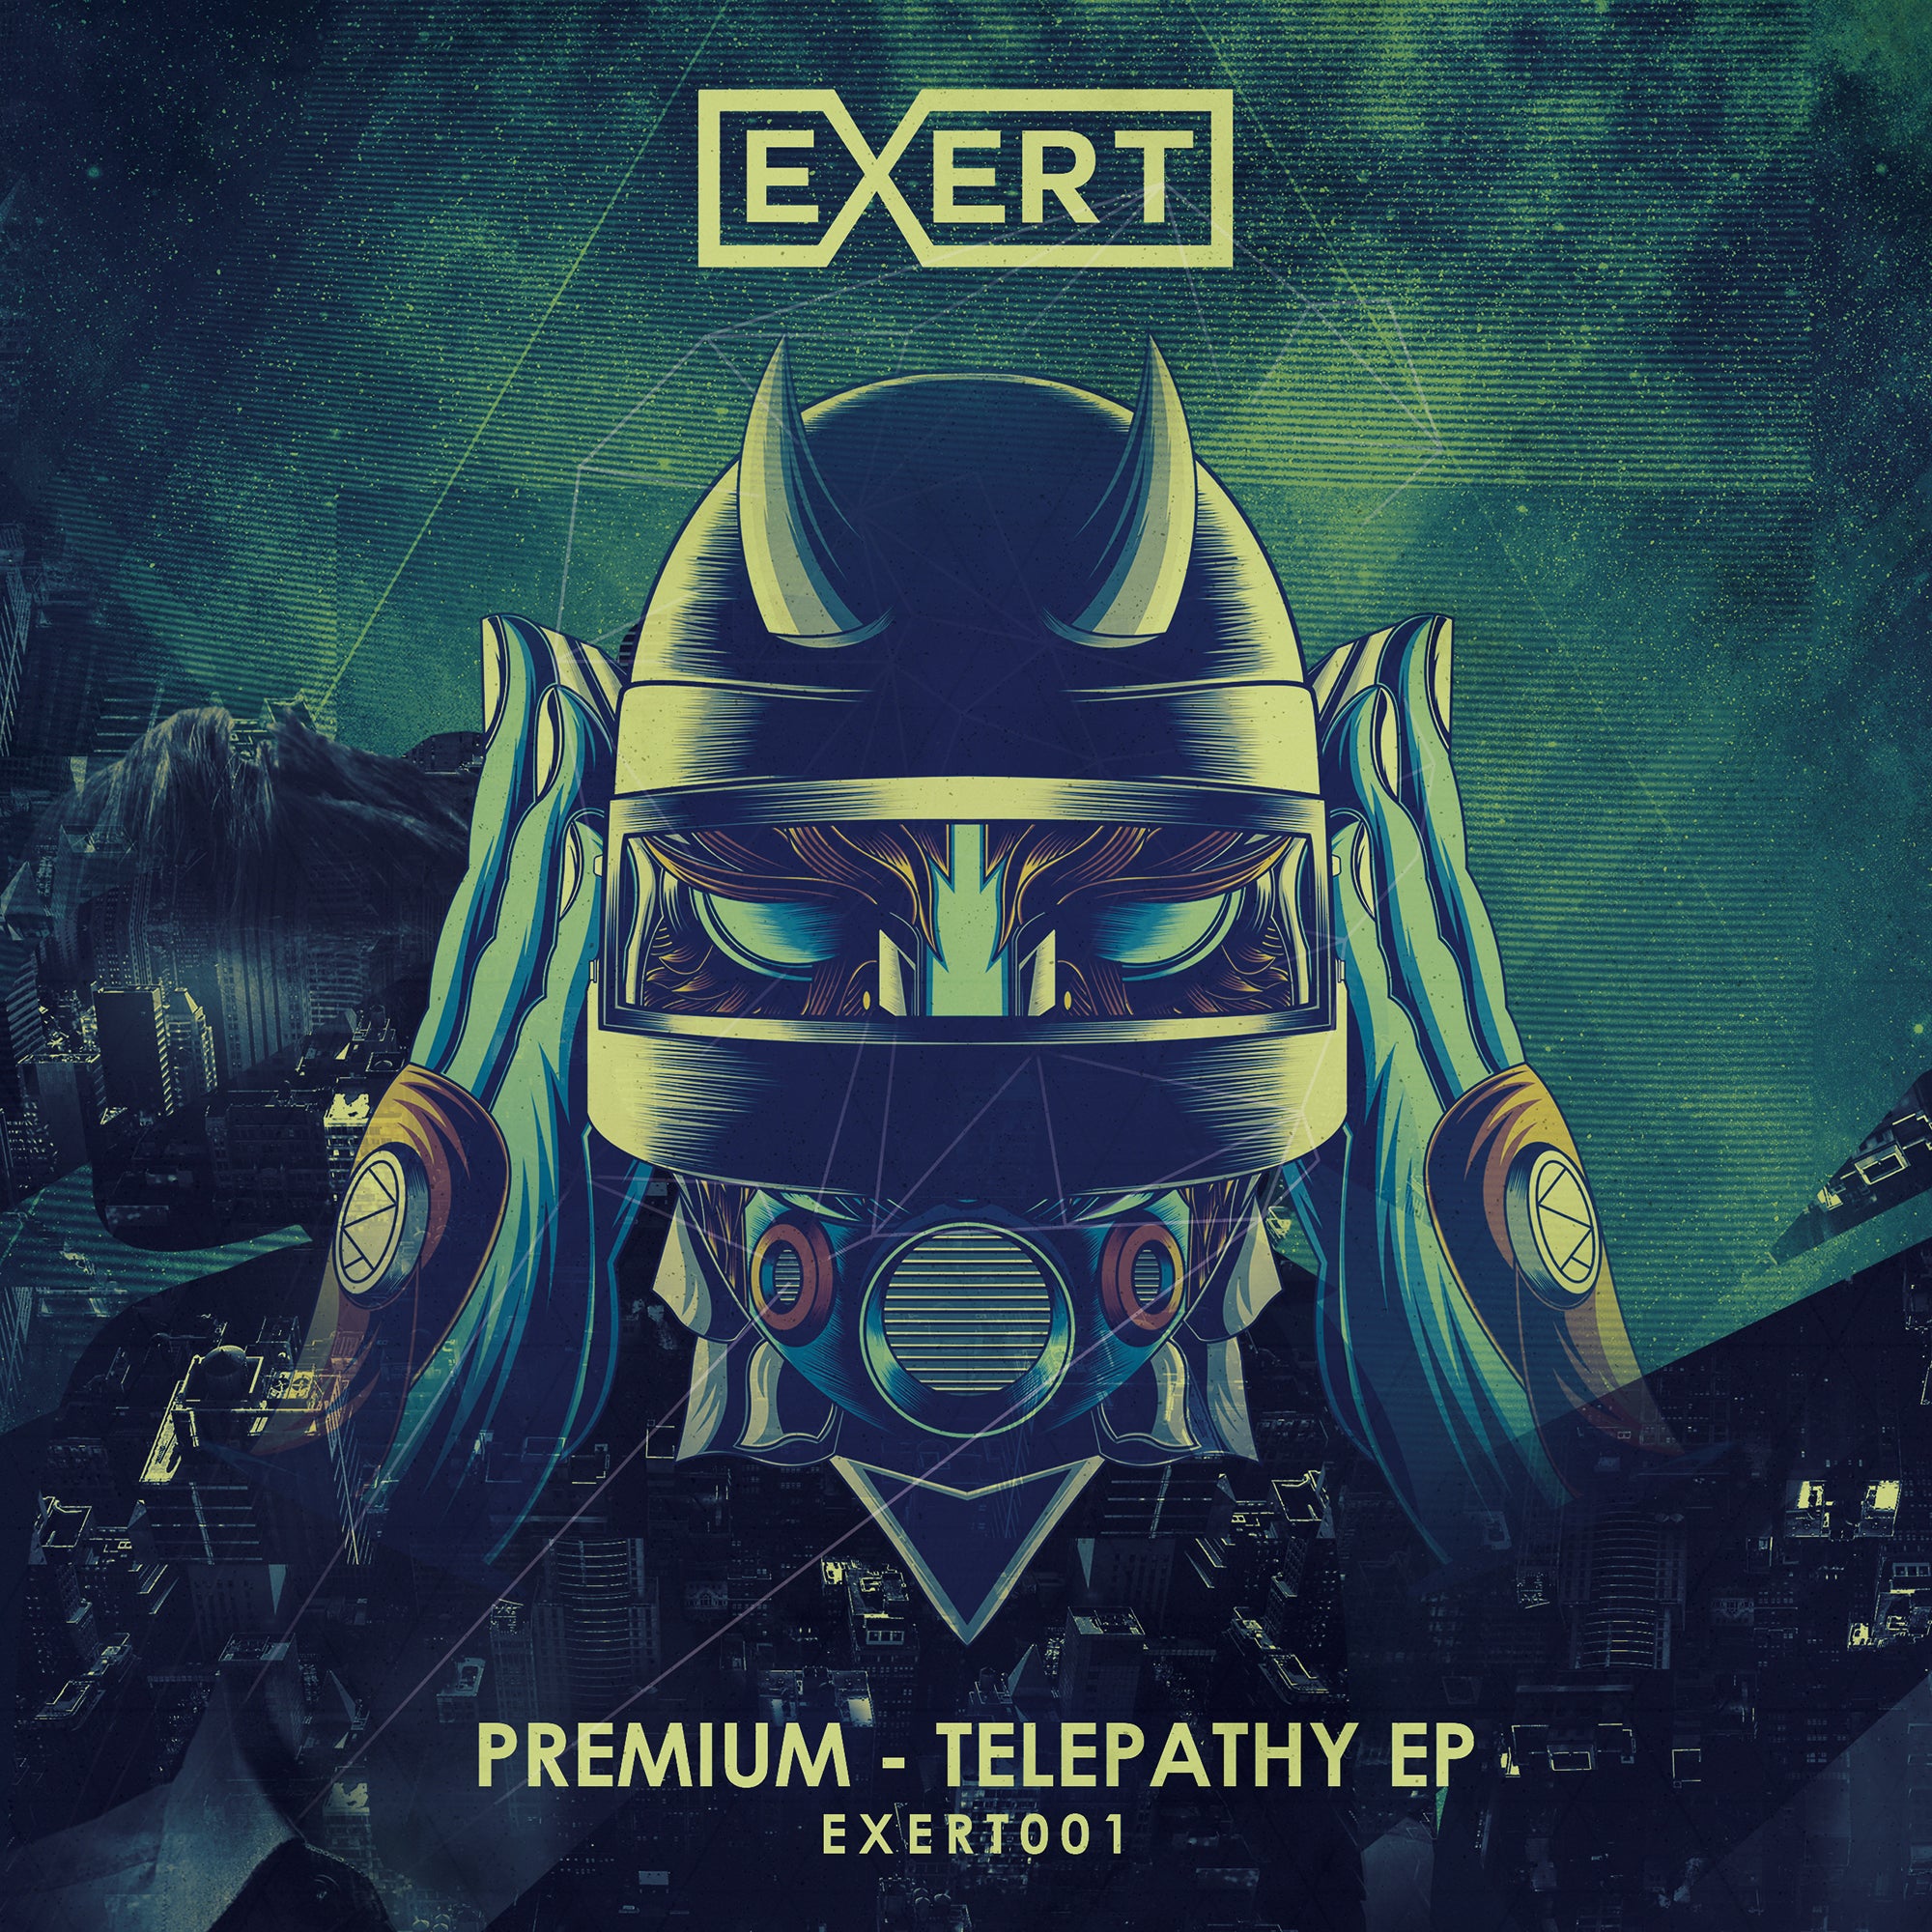 Premium - Telepathy EP